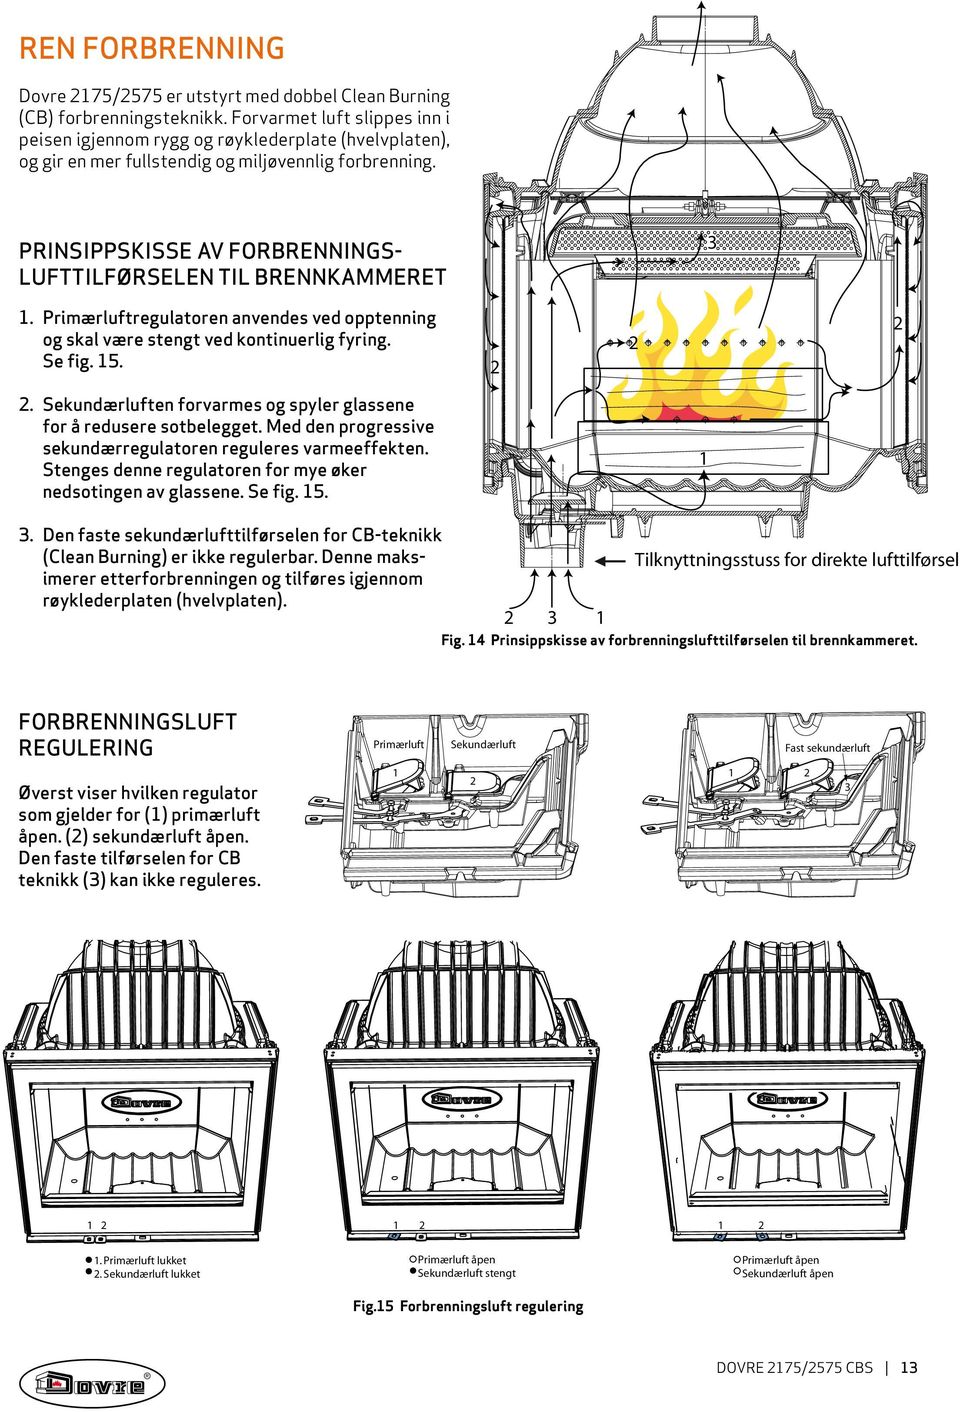 Prinsippskisse av forbrenningslufttilførselen til brennkammeret 3 1. Primærluftregulatoren anvendes ved opptenning og skal være stengt ved kontinuerlig fyring. Se fig. 15.